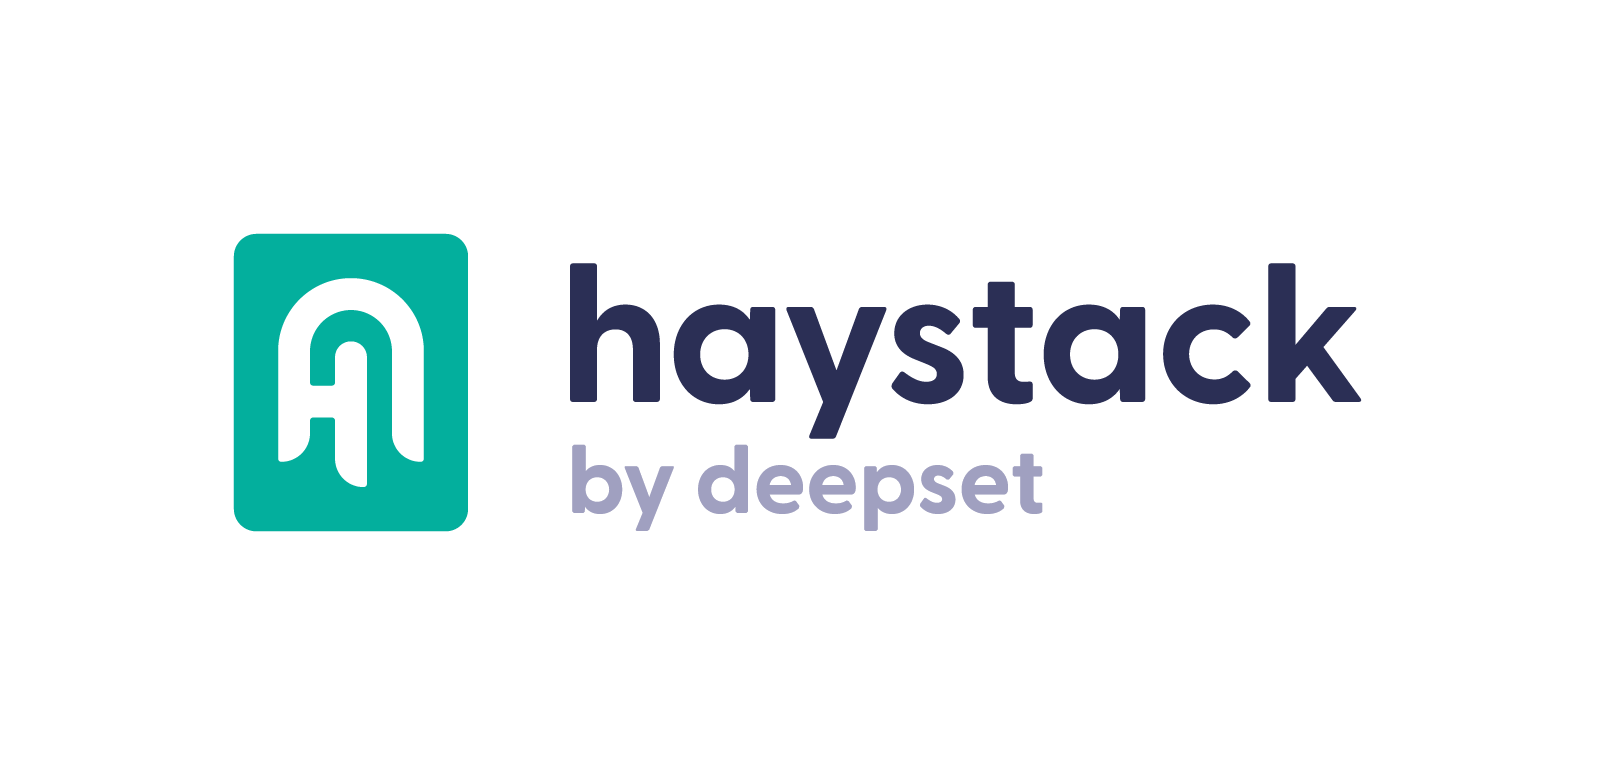 Haystack (by deepset)